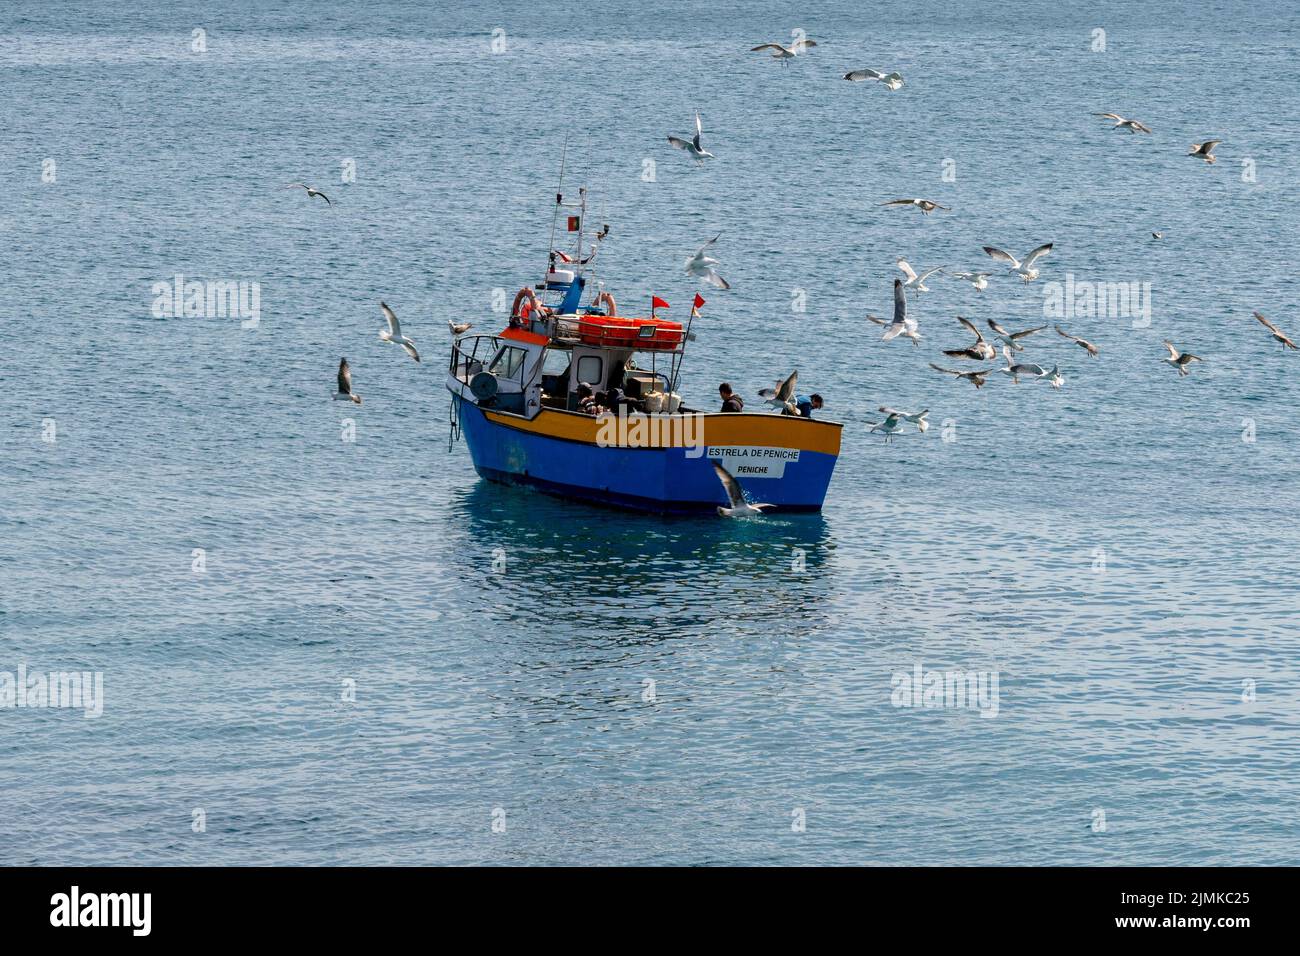 Des mouettes se battant au-dessus d'un petit bateau de pêche au large de la côte portugaise Banque D'Images